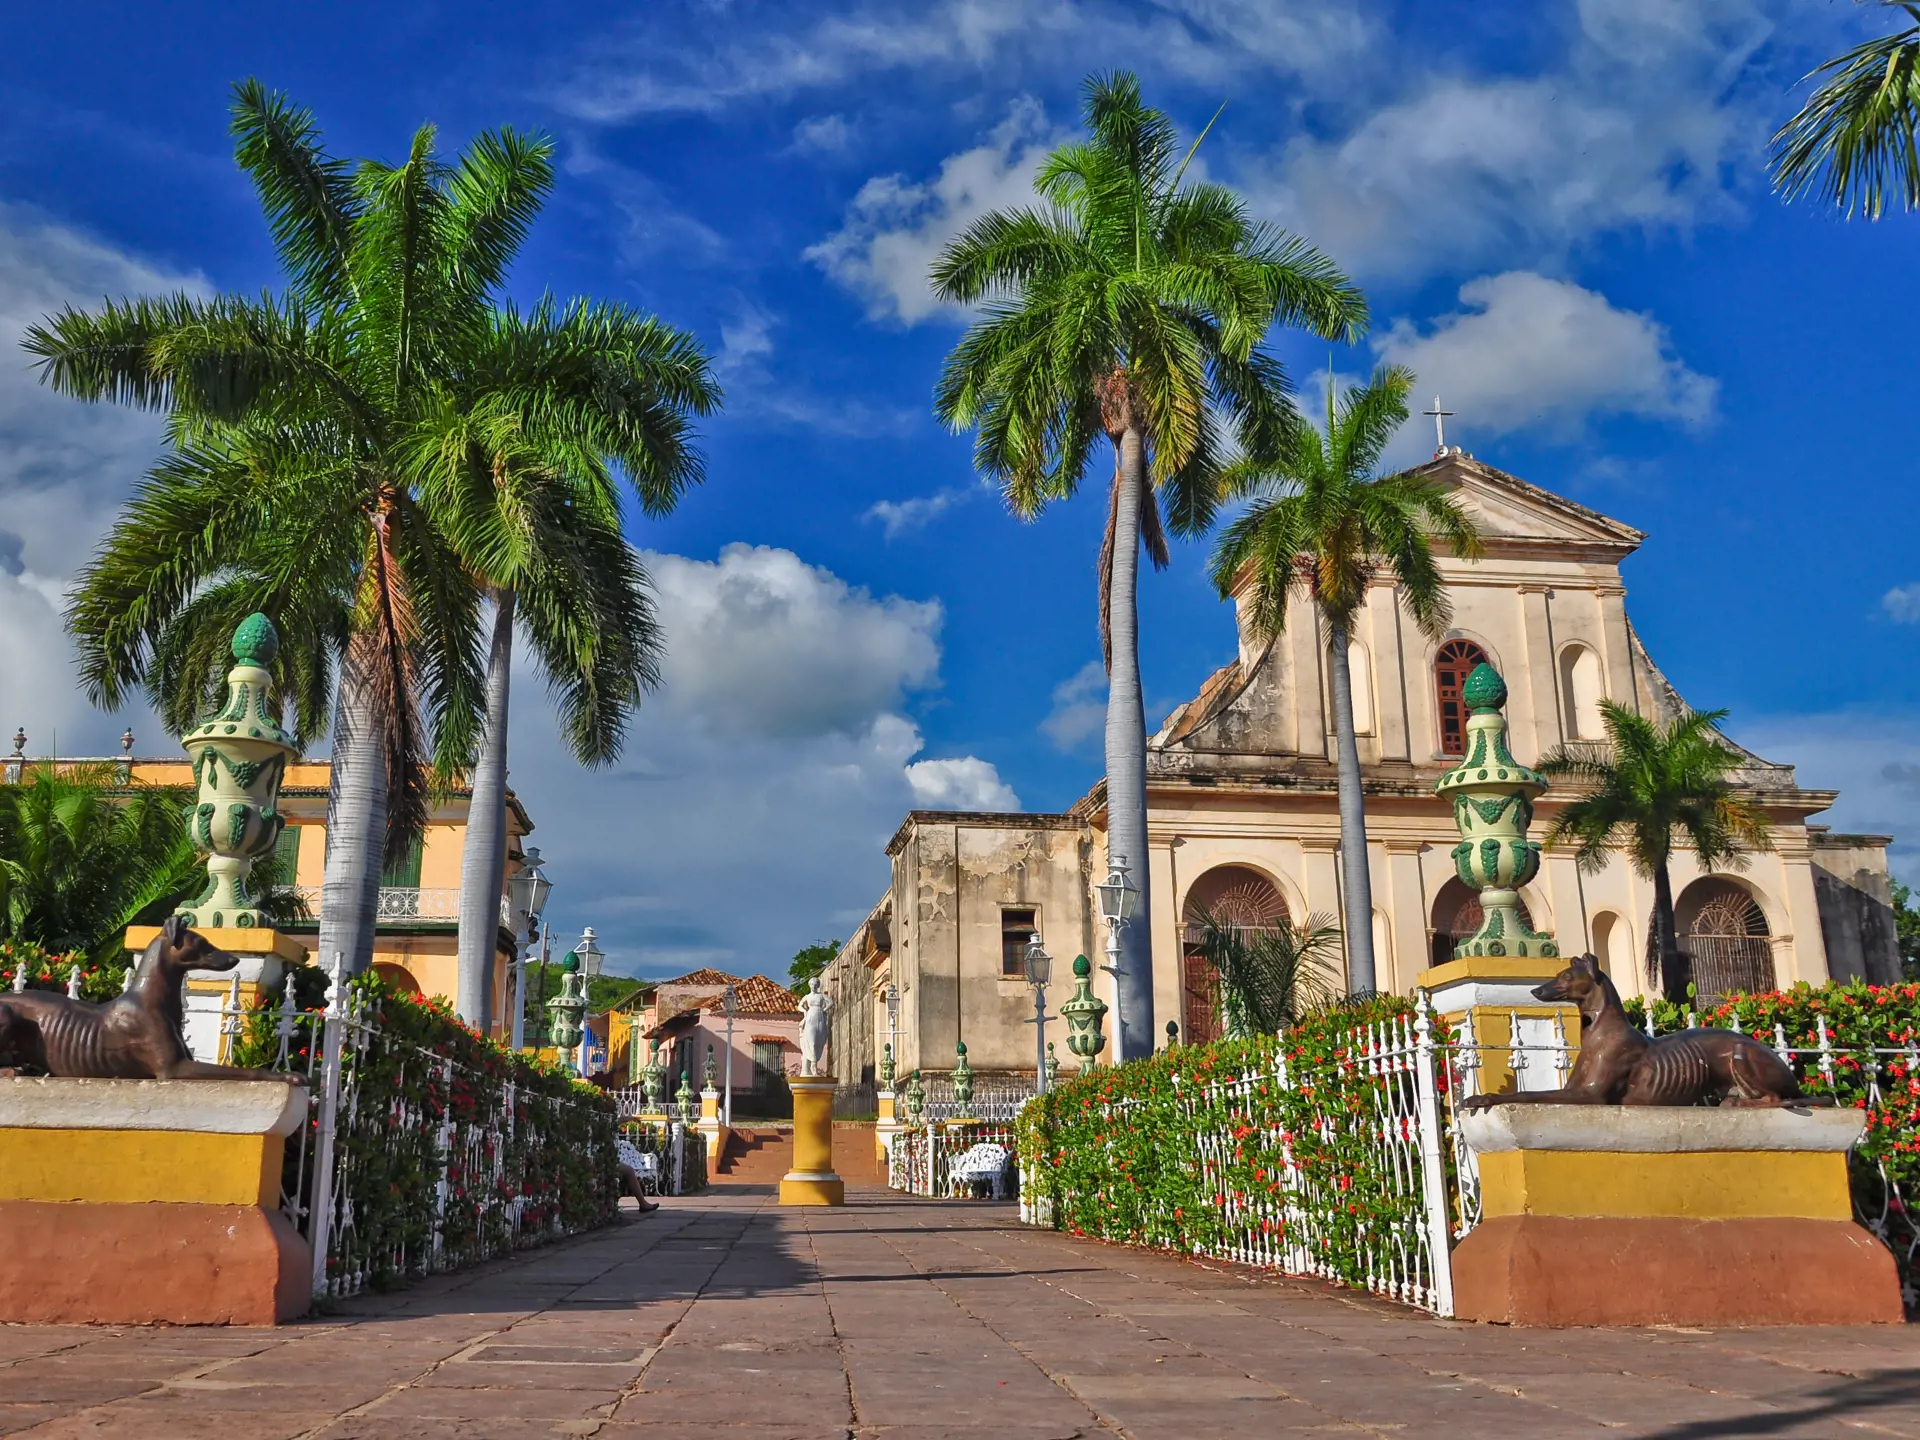 Trinidad - Cubas måske smukkeste by rummer spor fra den spanske kolonitid